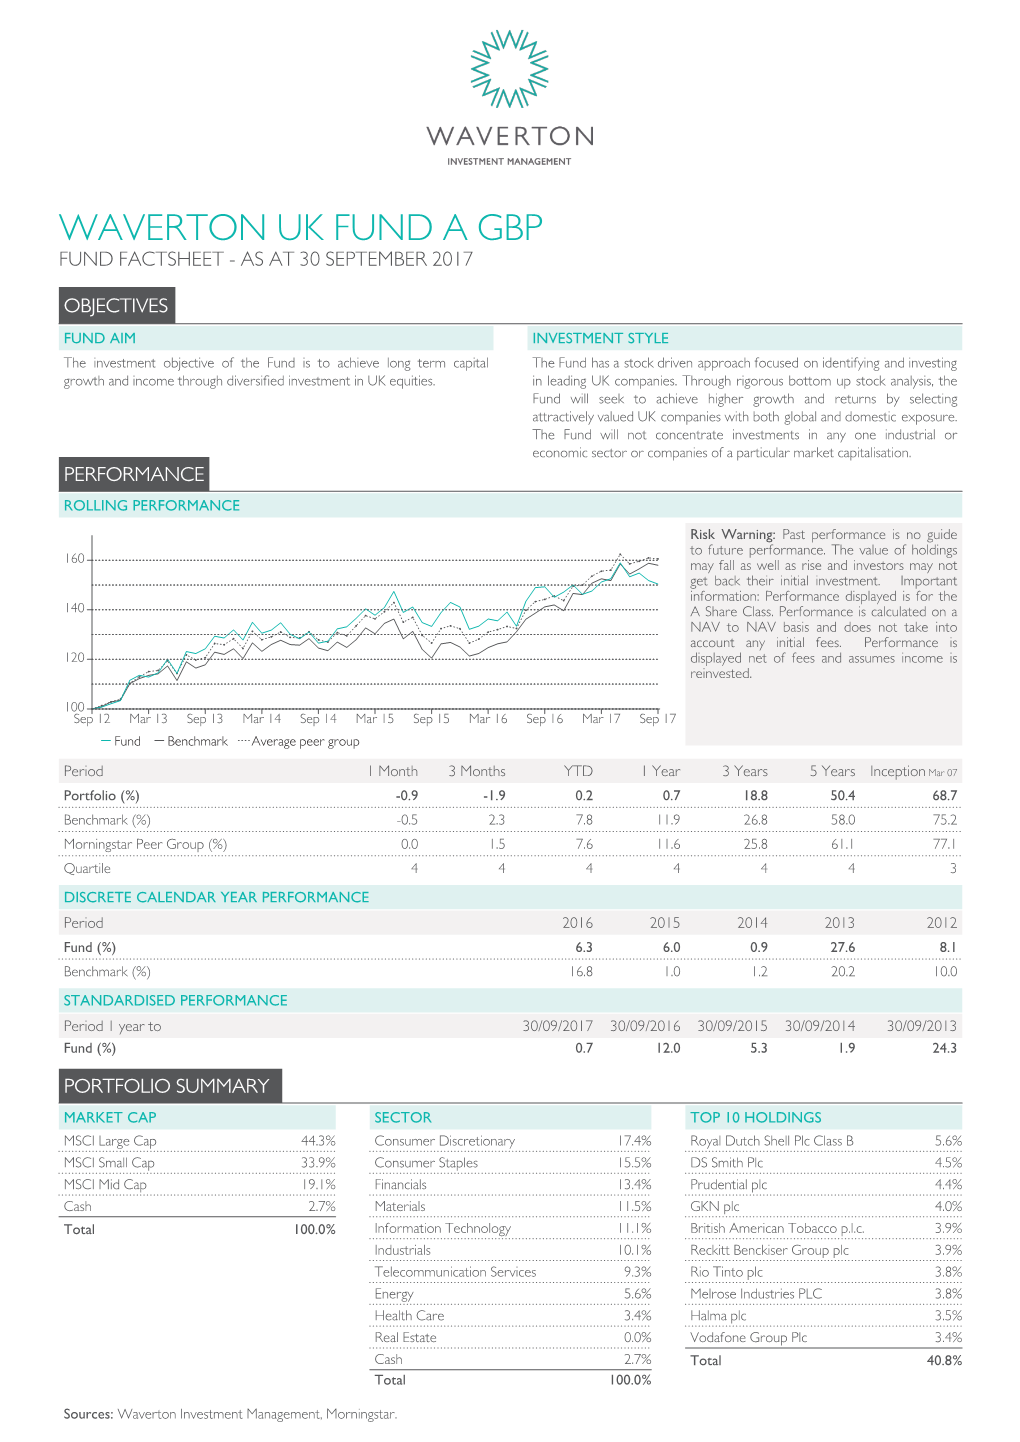 Waverton Uk Fund a Gbp Fund Factsheet - As at 30 September 2017